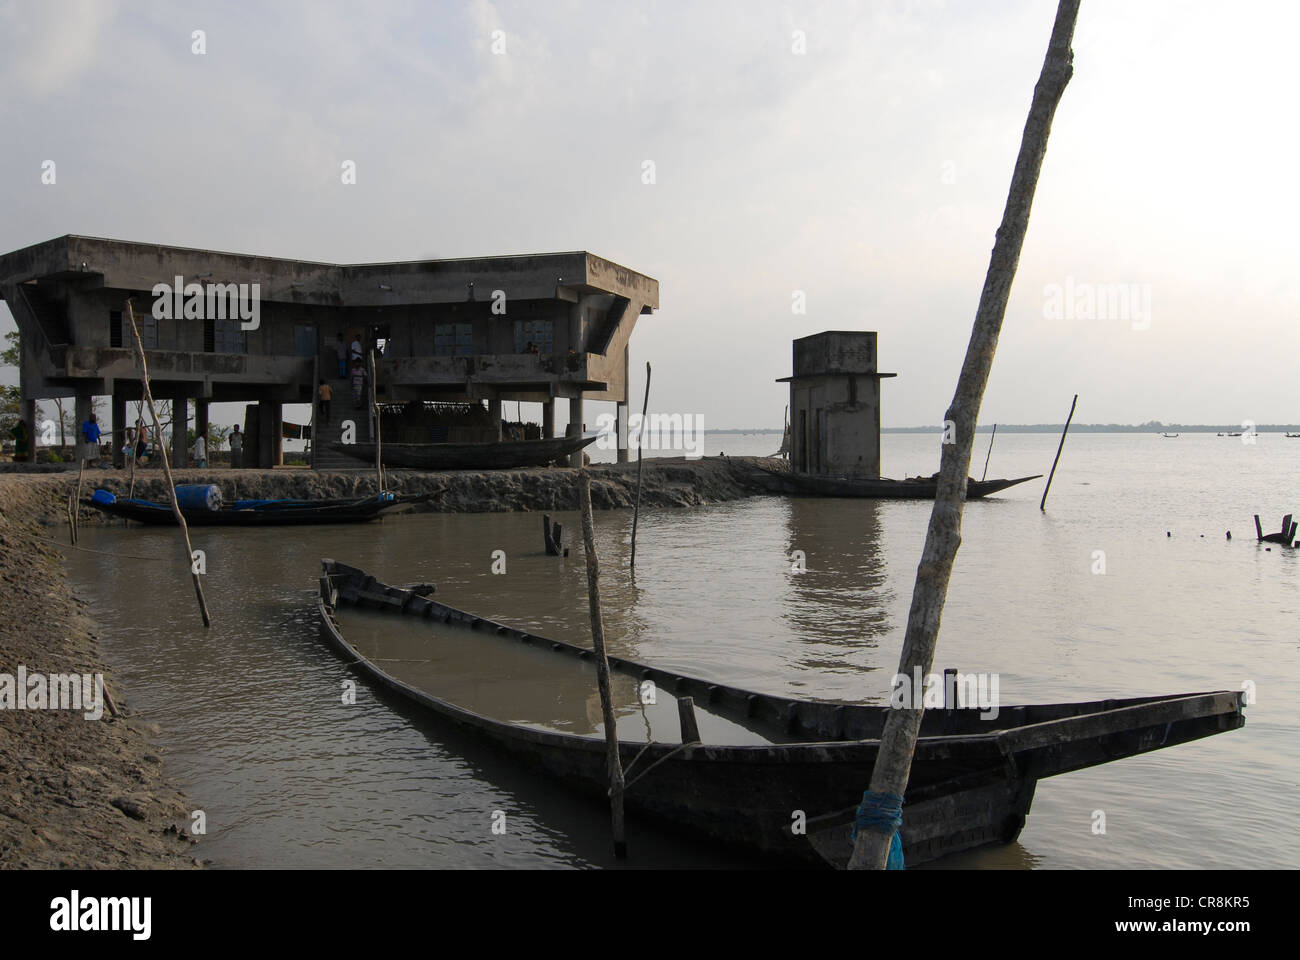 Bangladesh , villaggio Kalabogi presso il river Shibsha vicino alla baia del Bengala, i popoli sono i più colpiti dai cambiamenti climatici, inondazione rifugio per cyclone Foto Stock